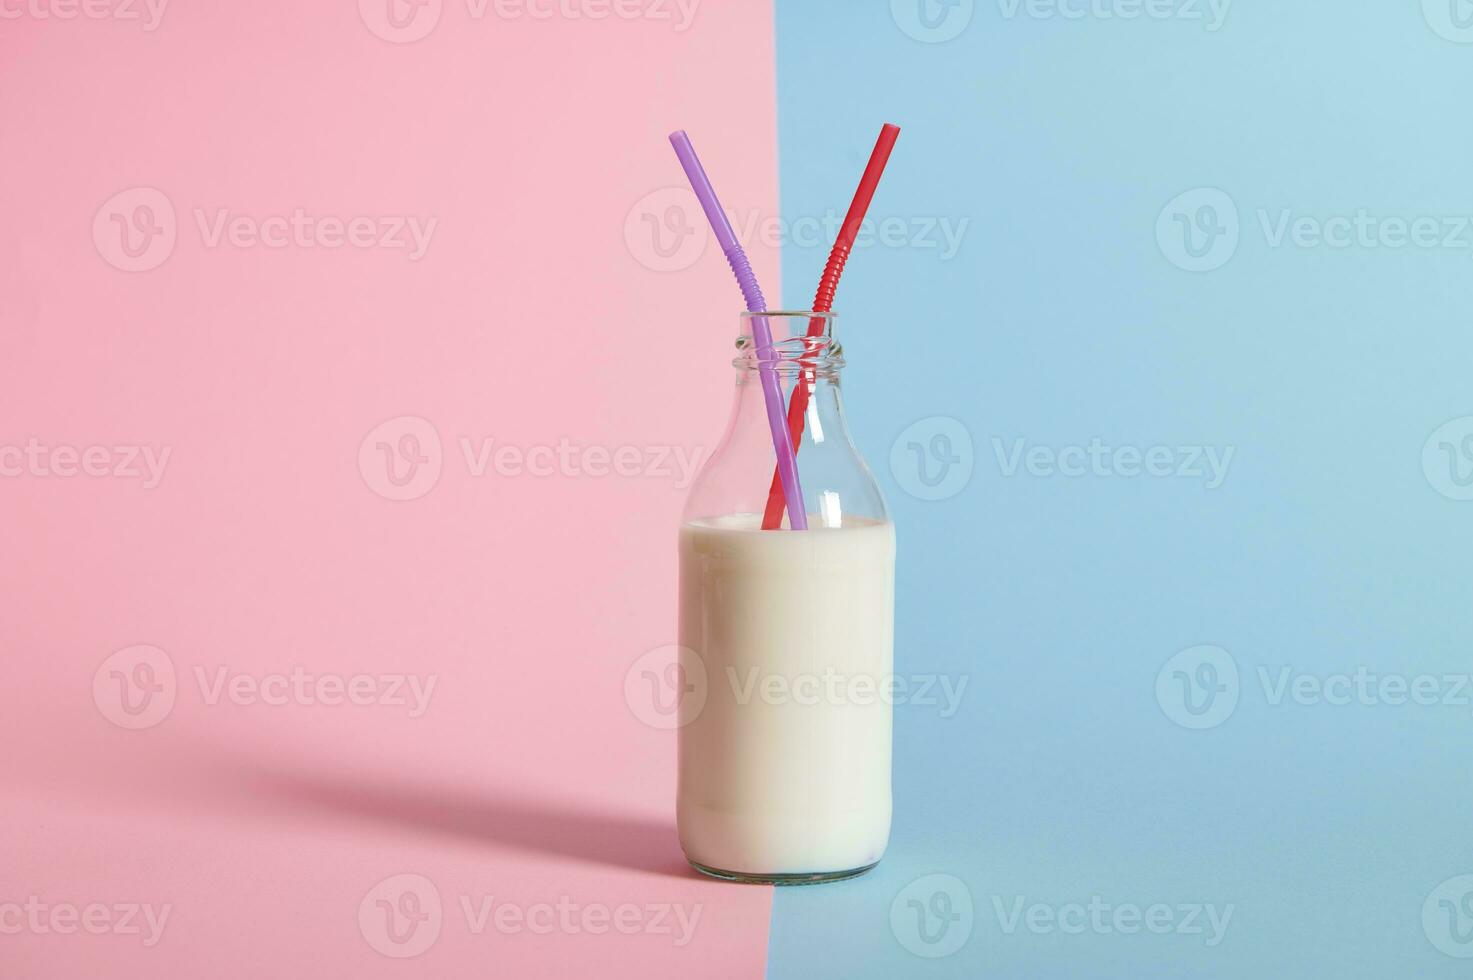 närbild av transparent flaska med mjölk och två strån i Det, isolerat på bicolor blå och rosa bakgrund foto